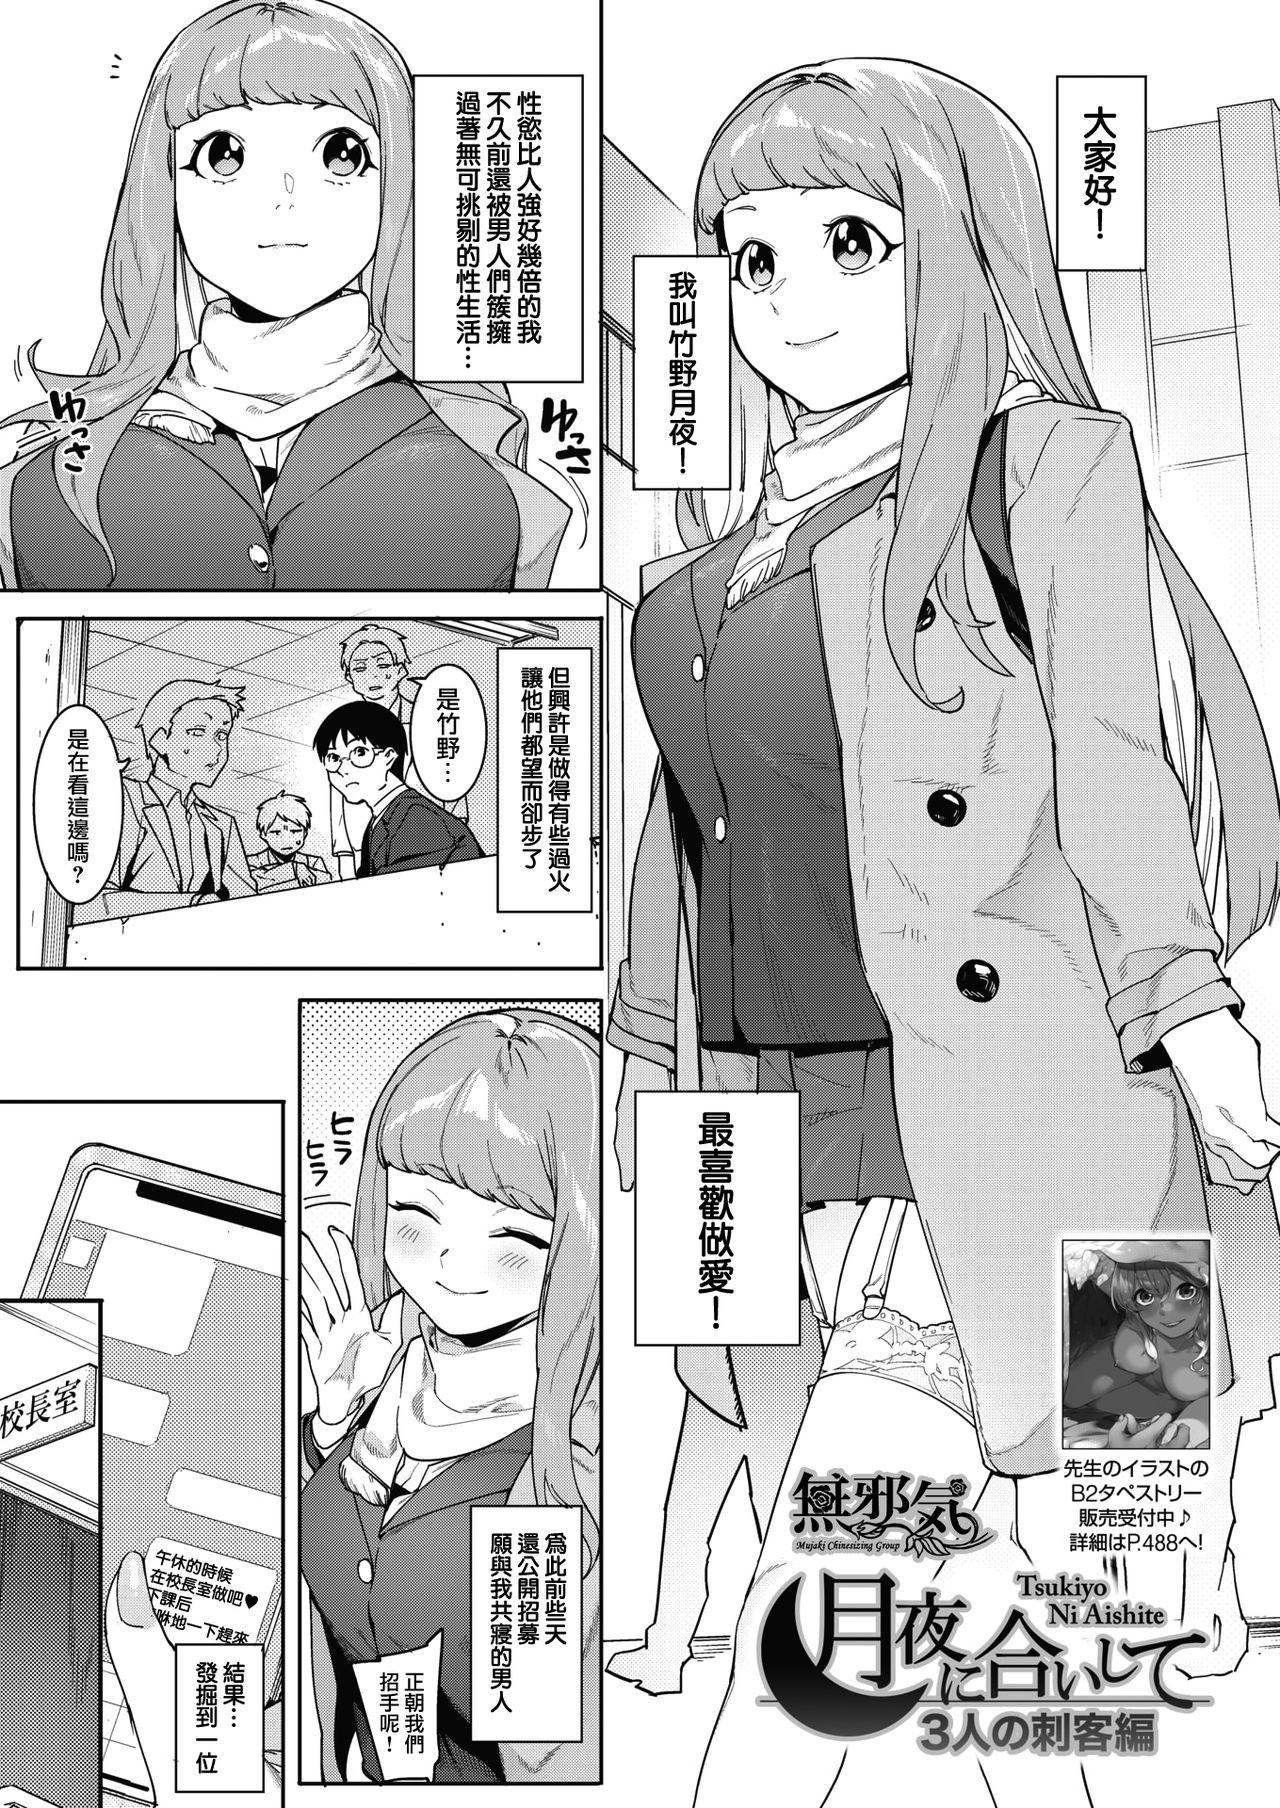 Gay Dudes Tsukiyo Ni Aishite 3-nin no Shikaku Hen Gapes Gaping Asshole - Page 1